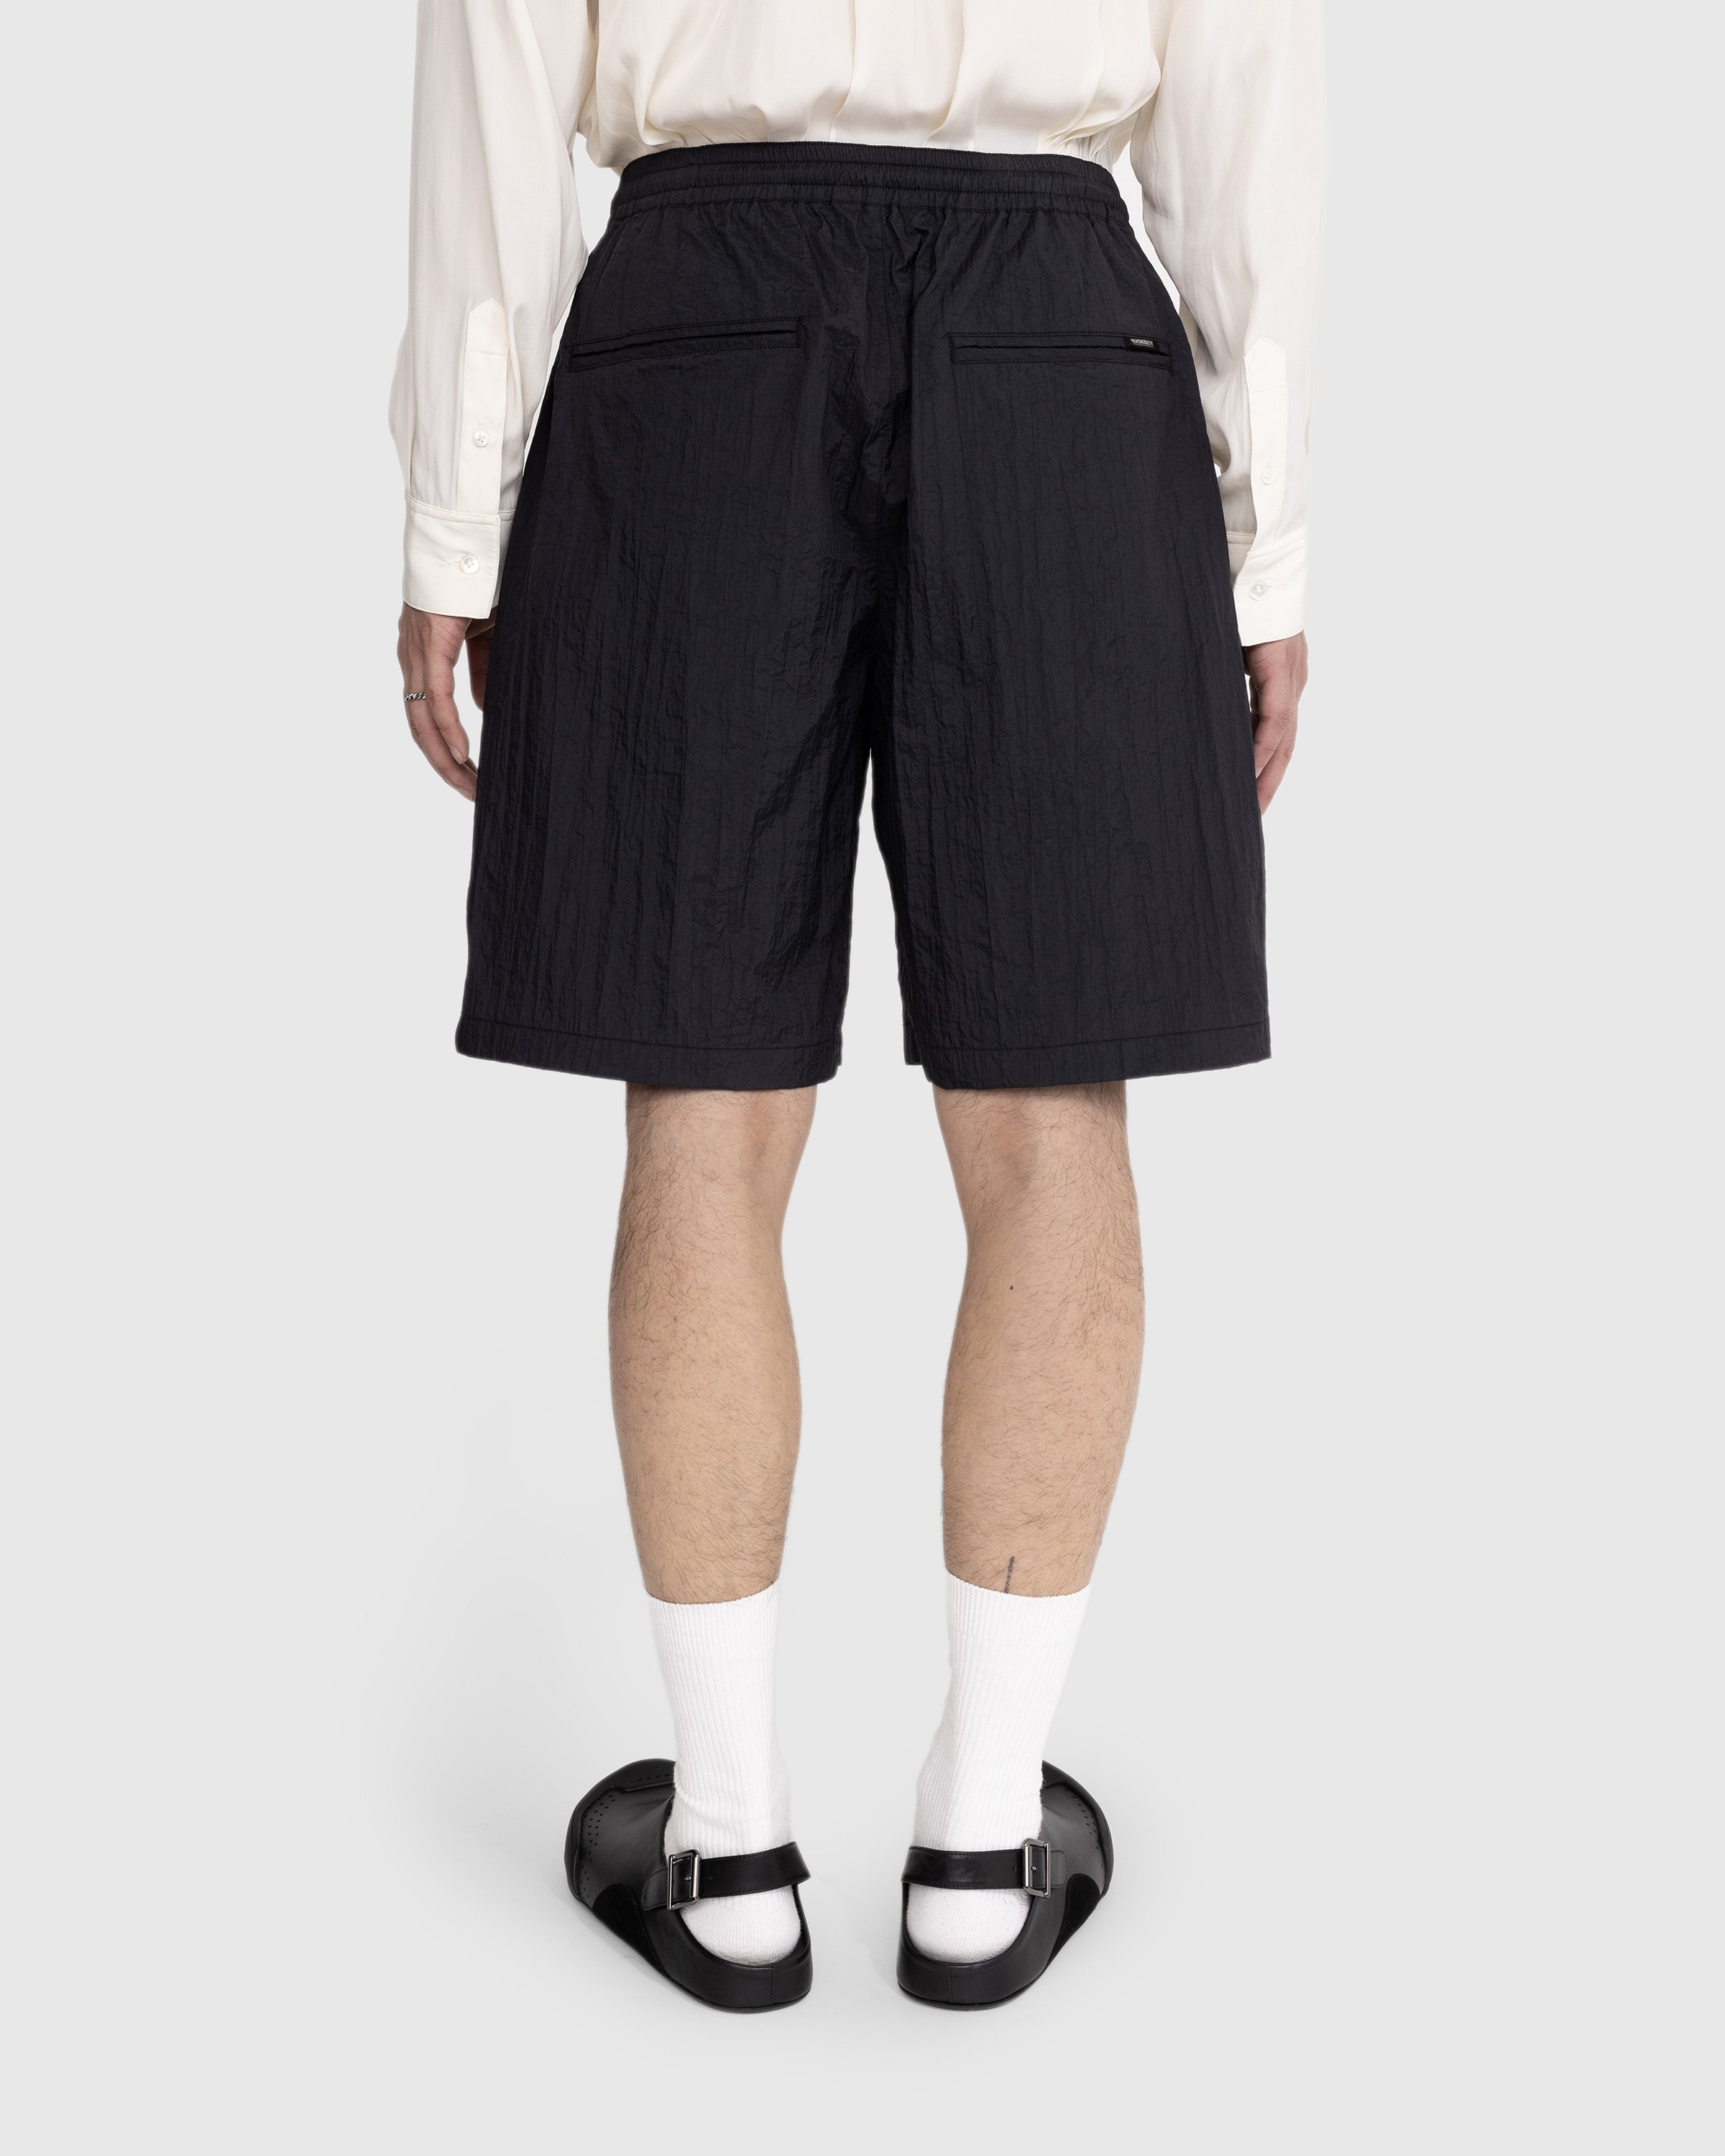 Highsnobiety - Texture Nylon Mid Length Elastic Shorts Black - Clothing - Black - Image 3